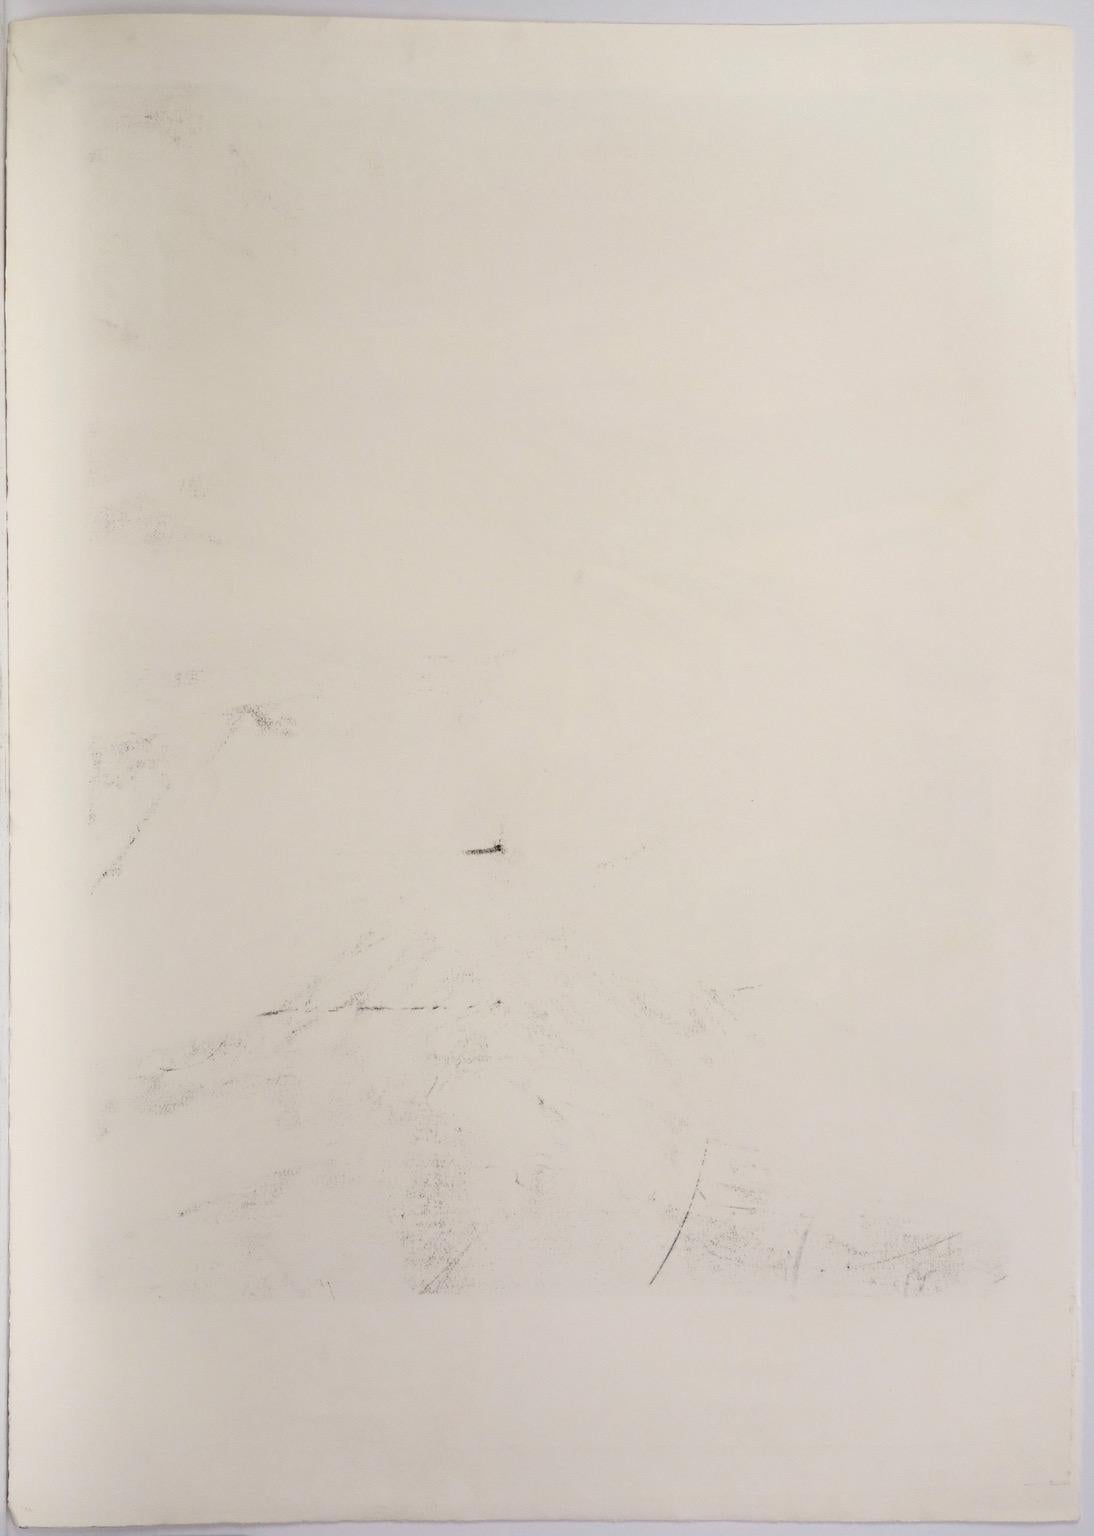 Lithograph 255 - Black Abstract Print by Zao Wou-Ki